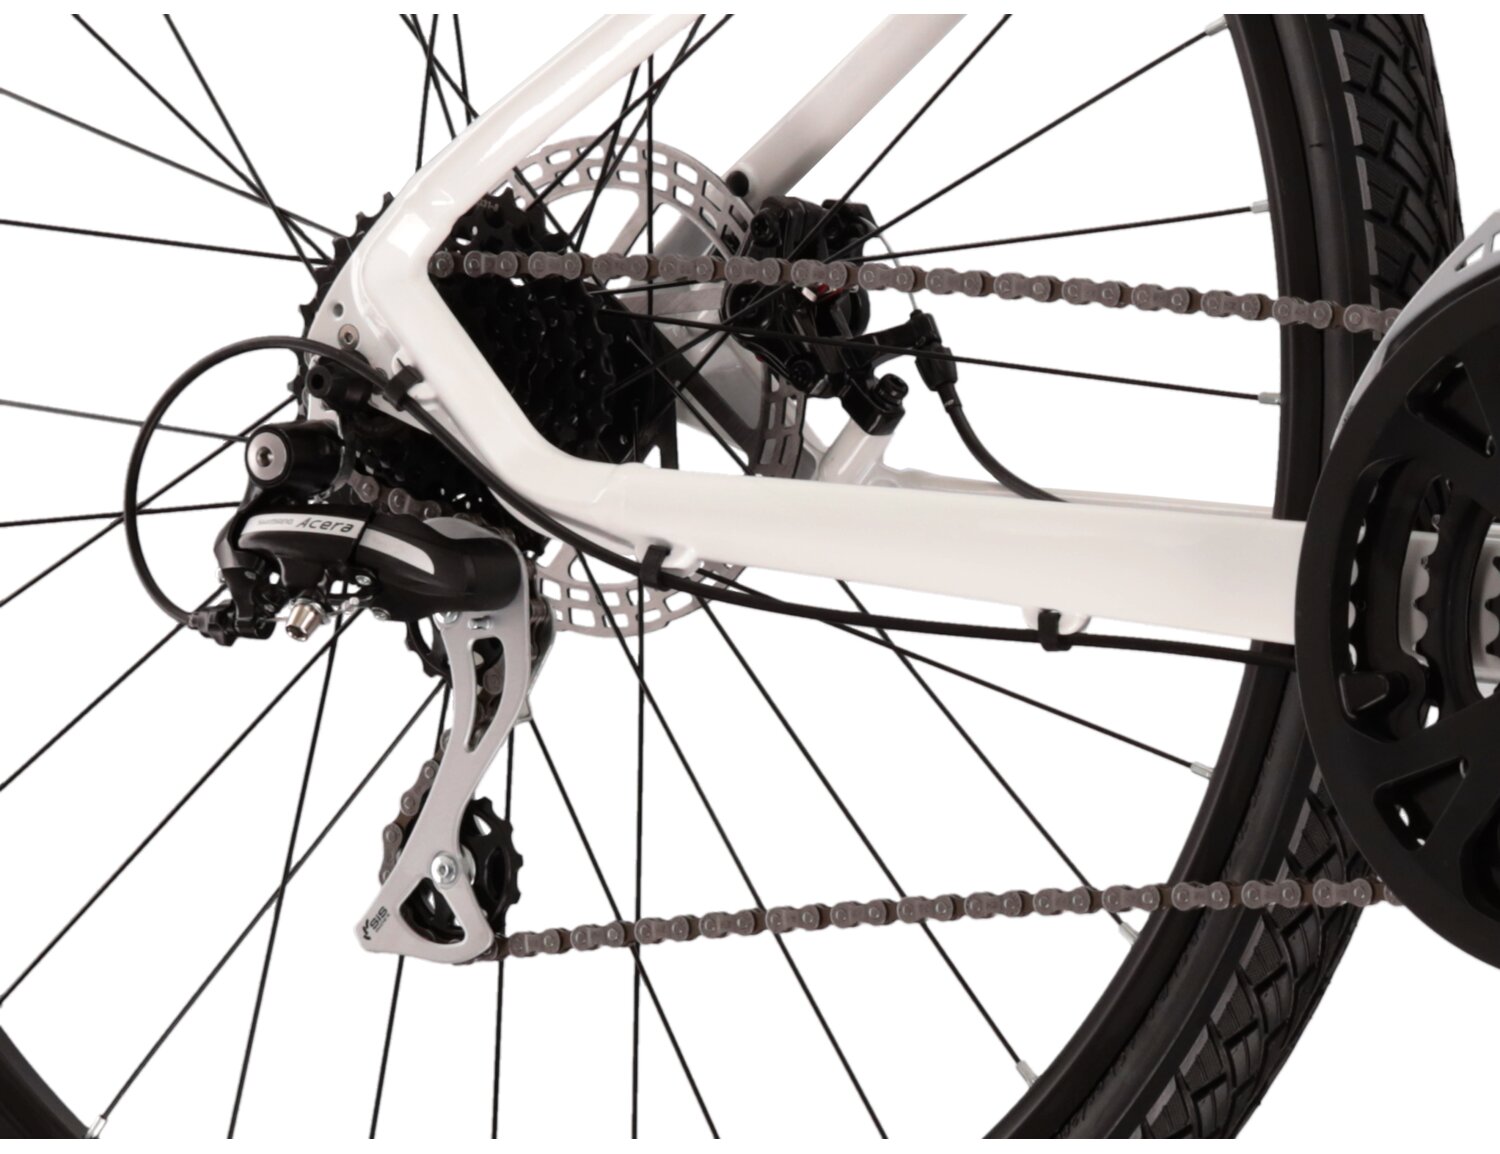  Tylna ośmiobiegowa przerzutka Shimano Acera M3020 oraz mechaniczne hamulce tarczowe w rowerze crossowym damskim KROSS Evado 3.0 